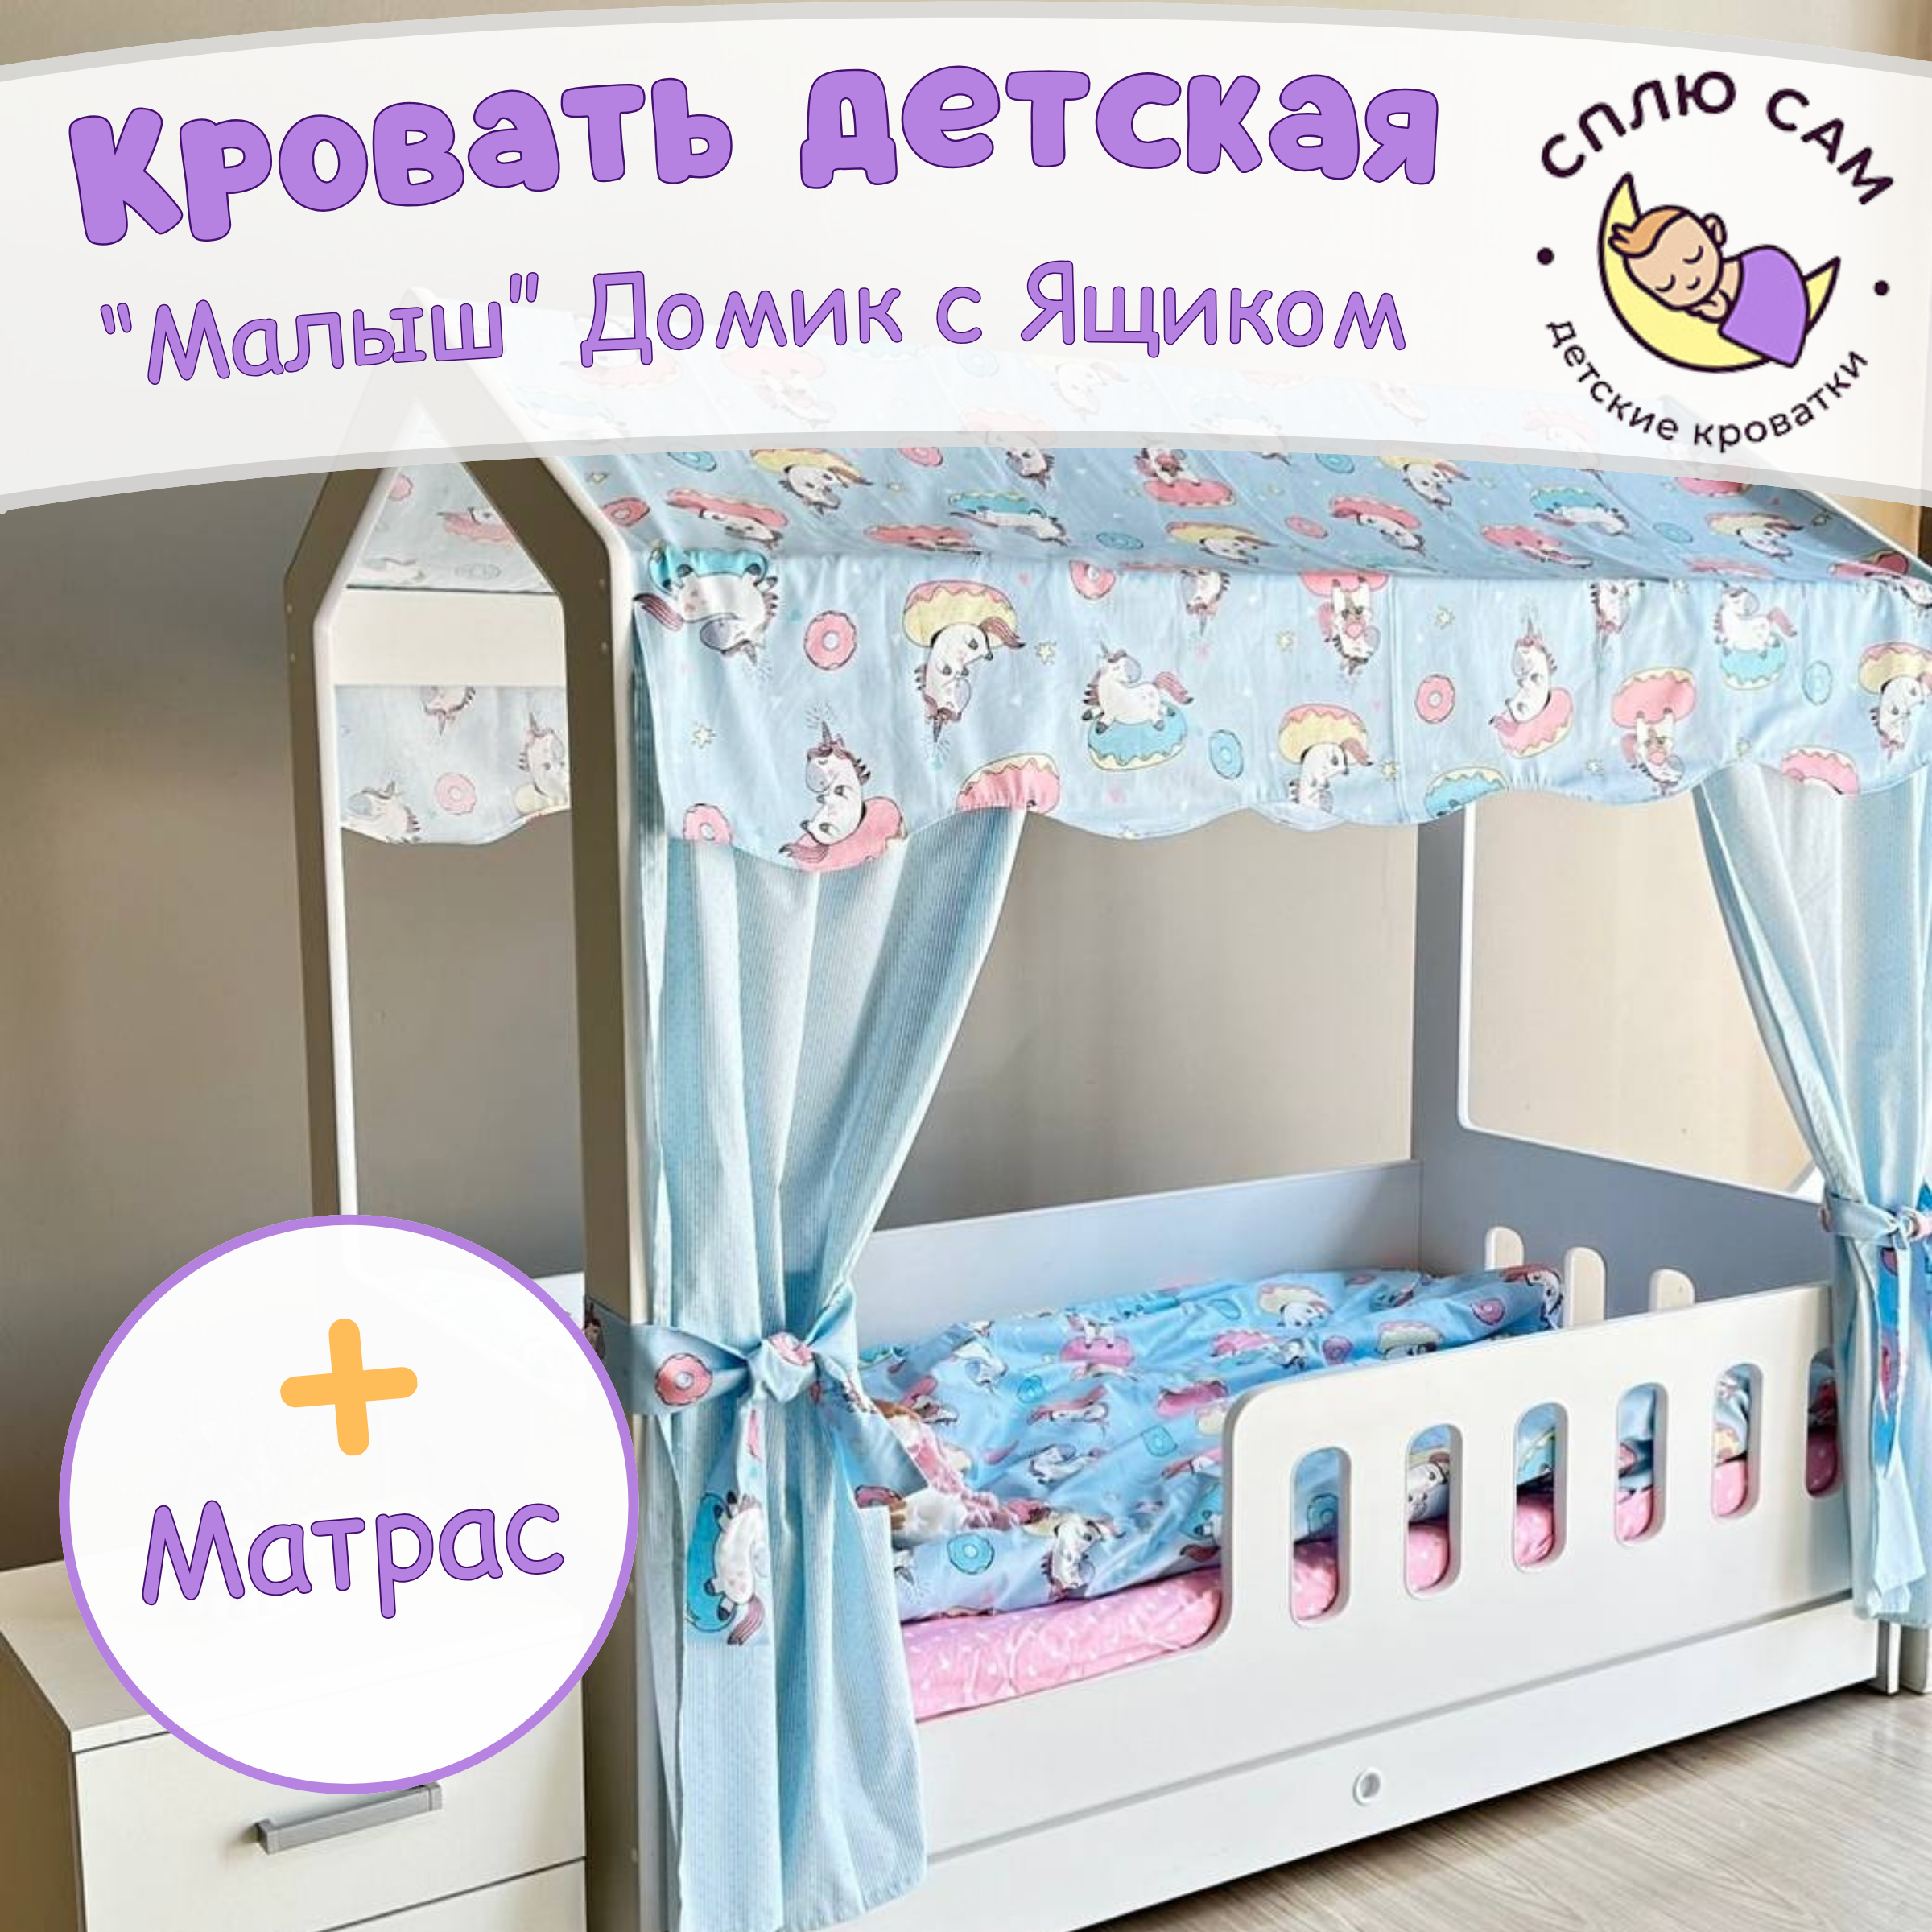 Кровать детская Сплю Сам Домик с ящиком, матрасом, белый, 160х80 см